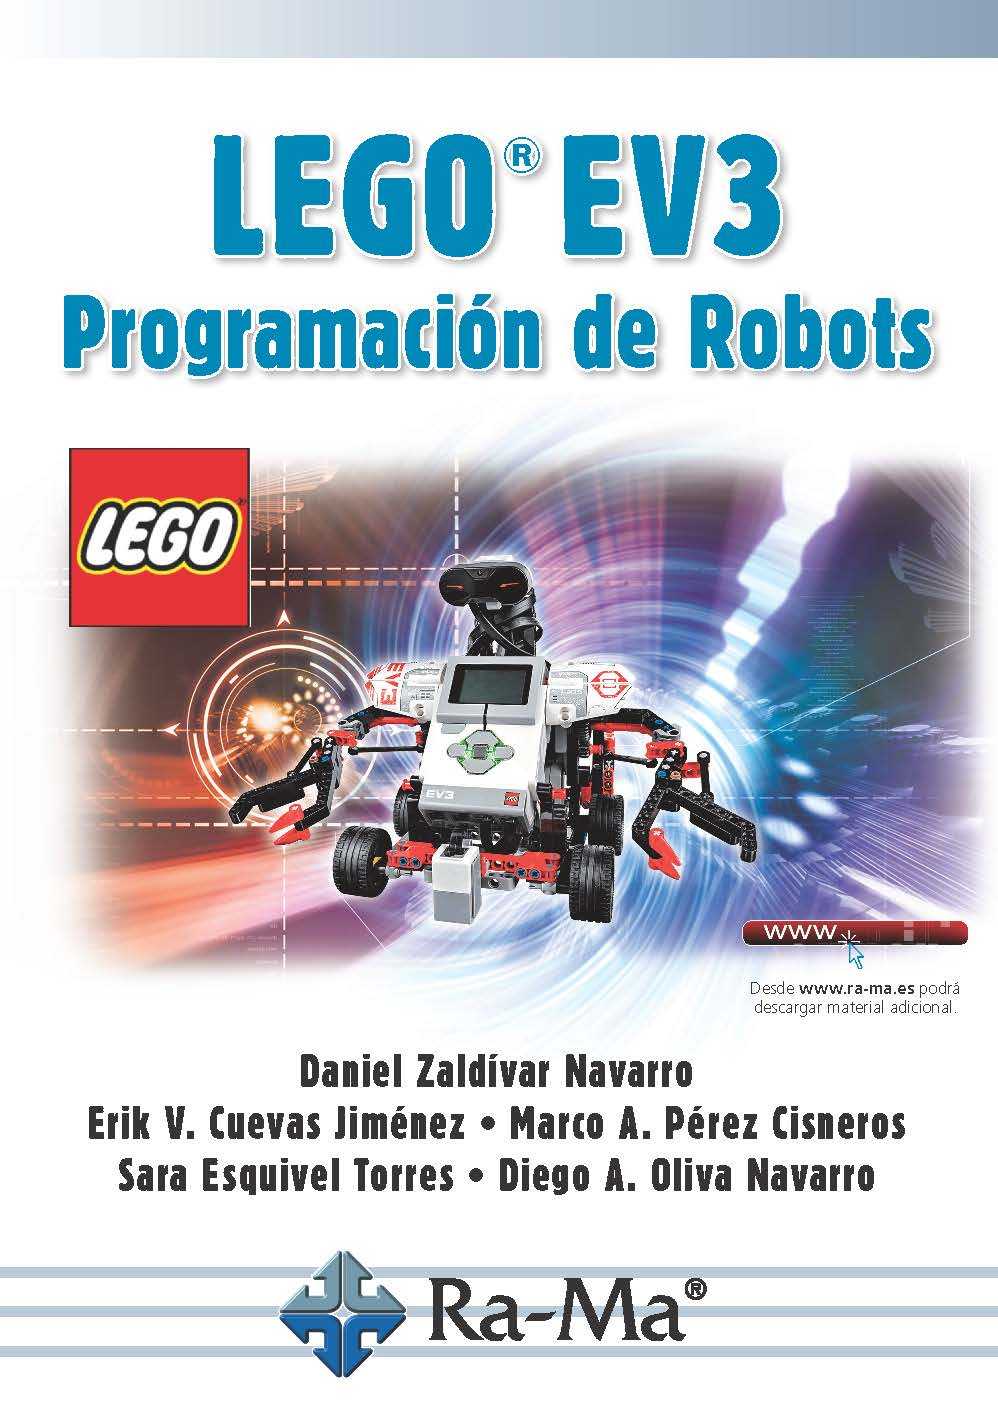 LEGO EV3. de Robots - Grupo RA-MA